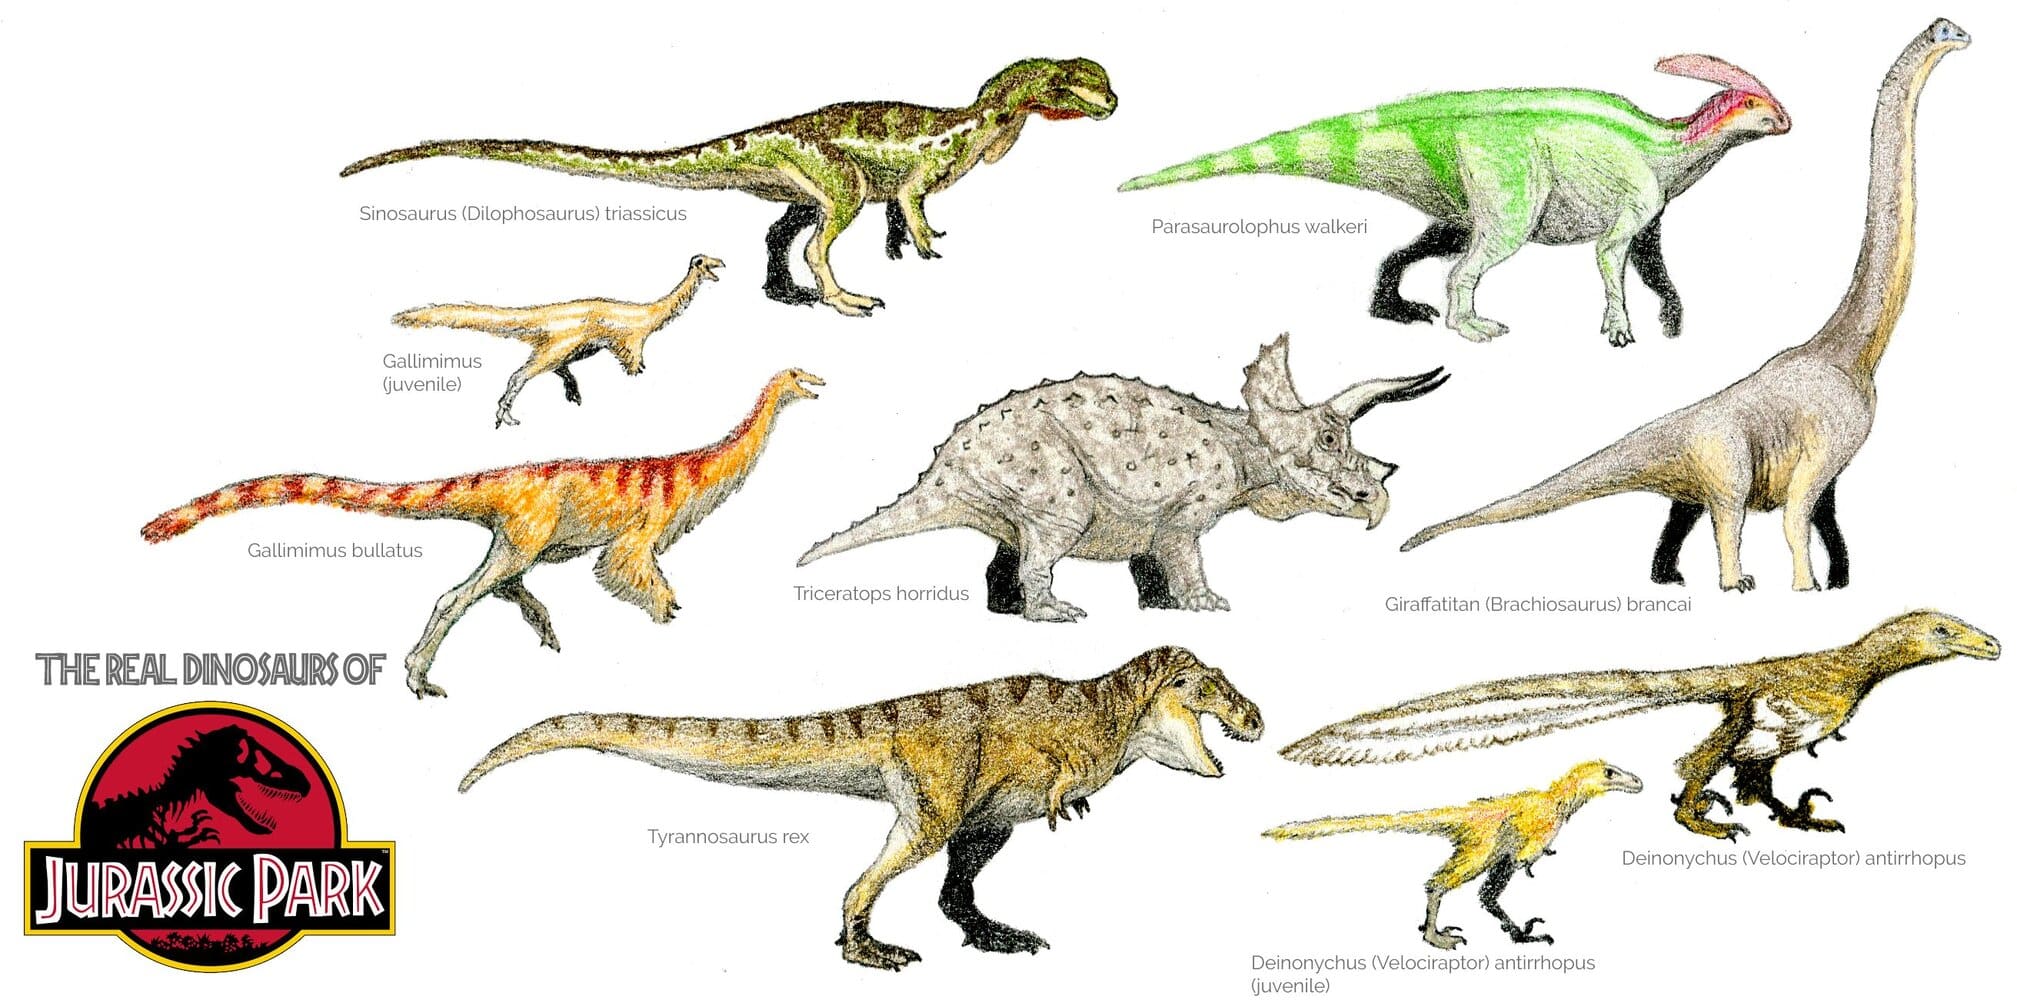 Dinosaurs of Jurassic Park